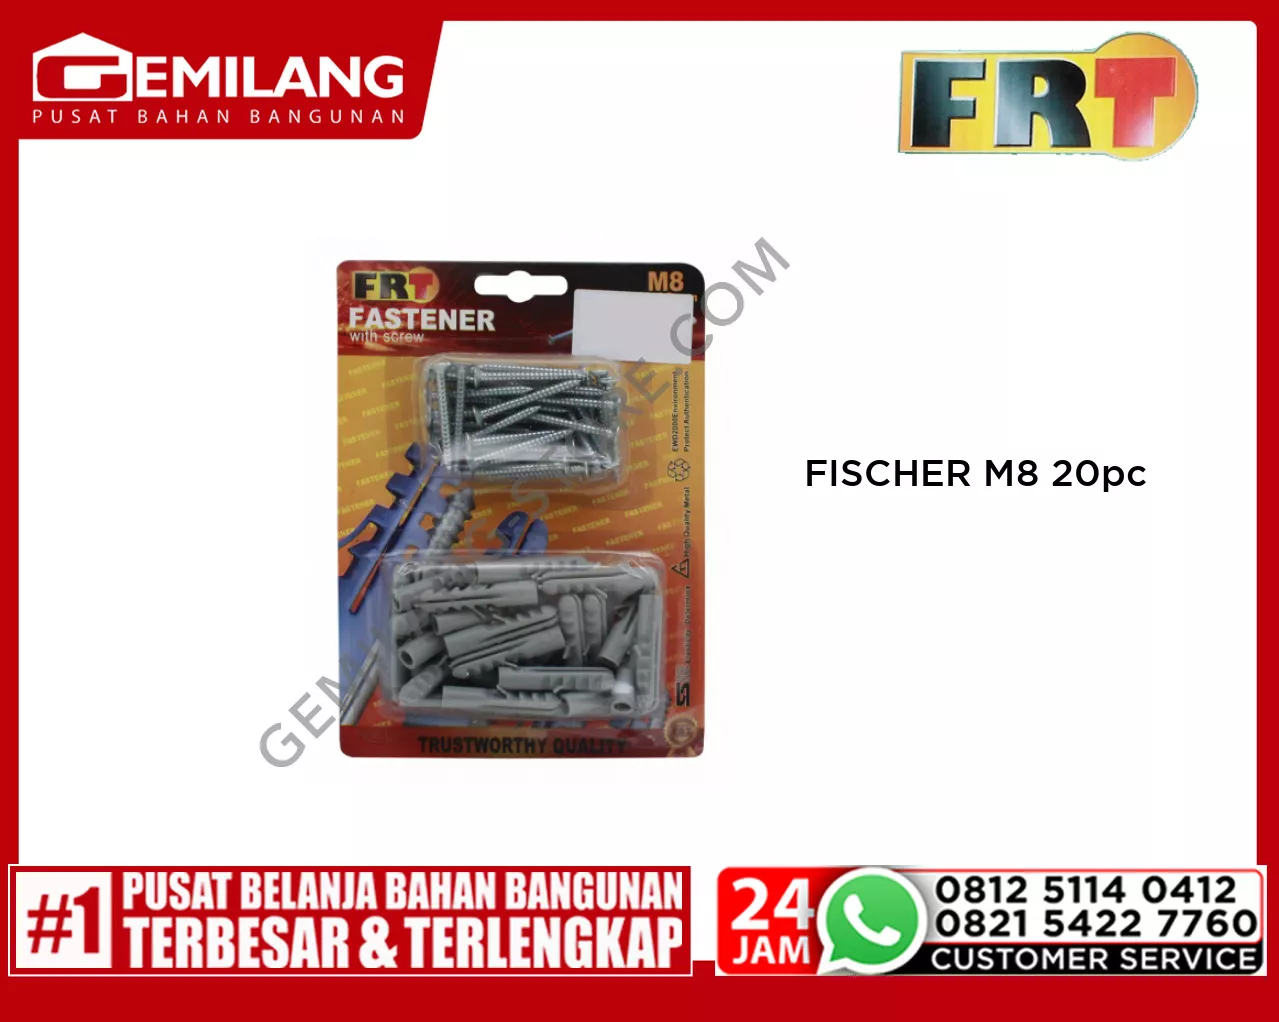 FISCHER M8 20pc